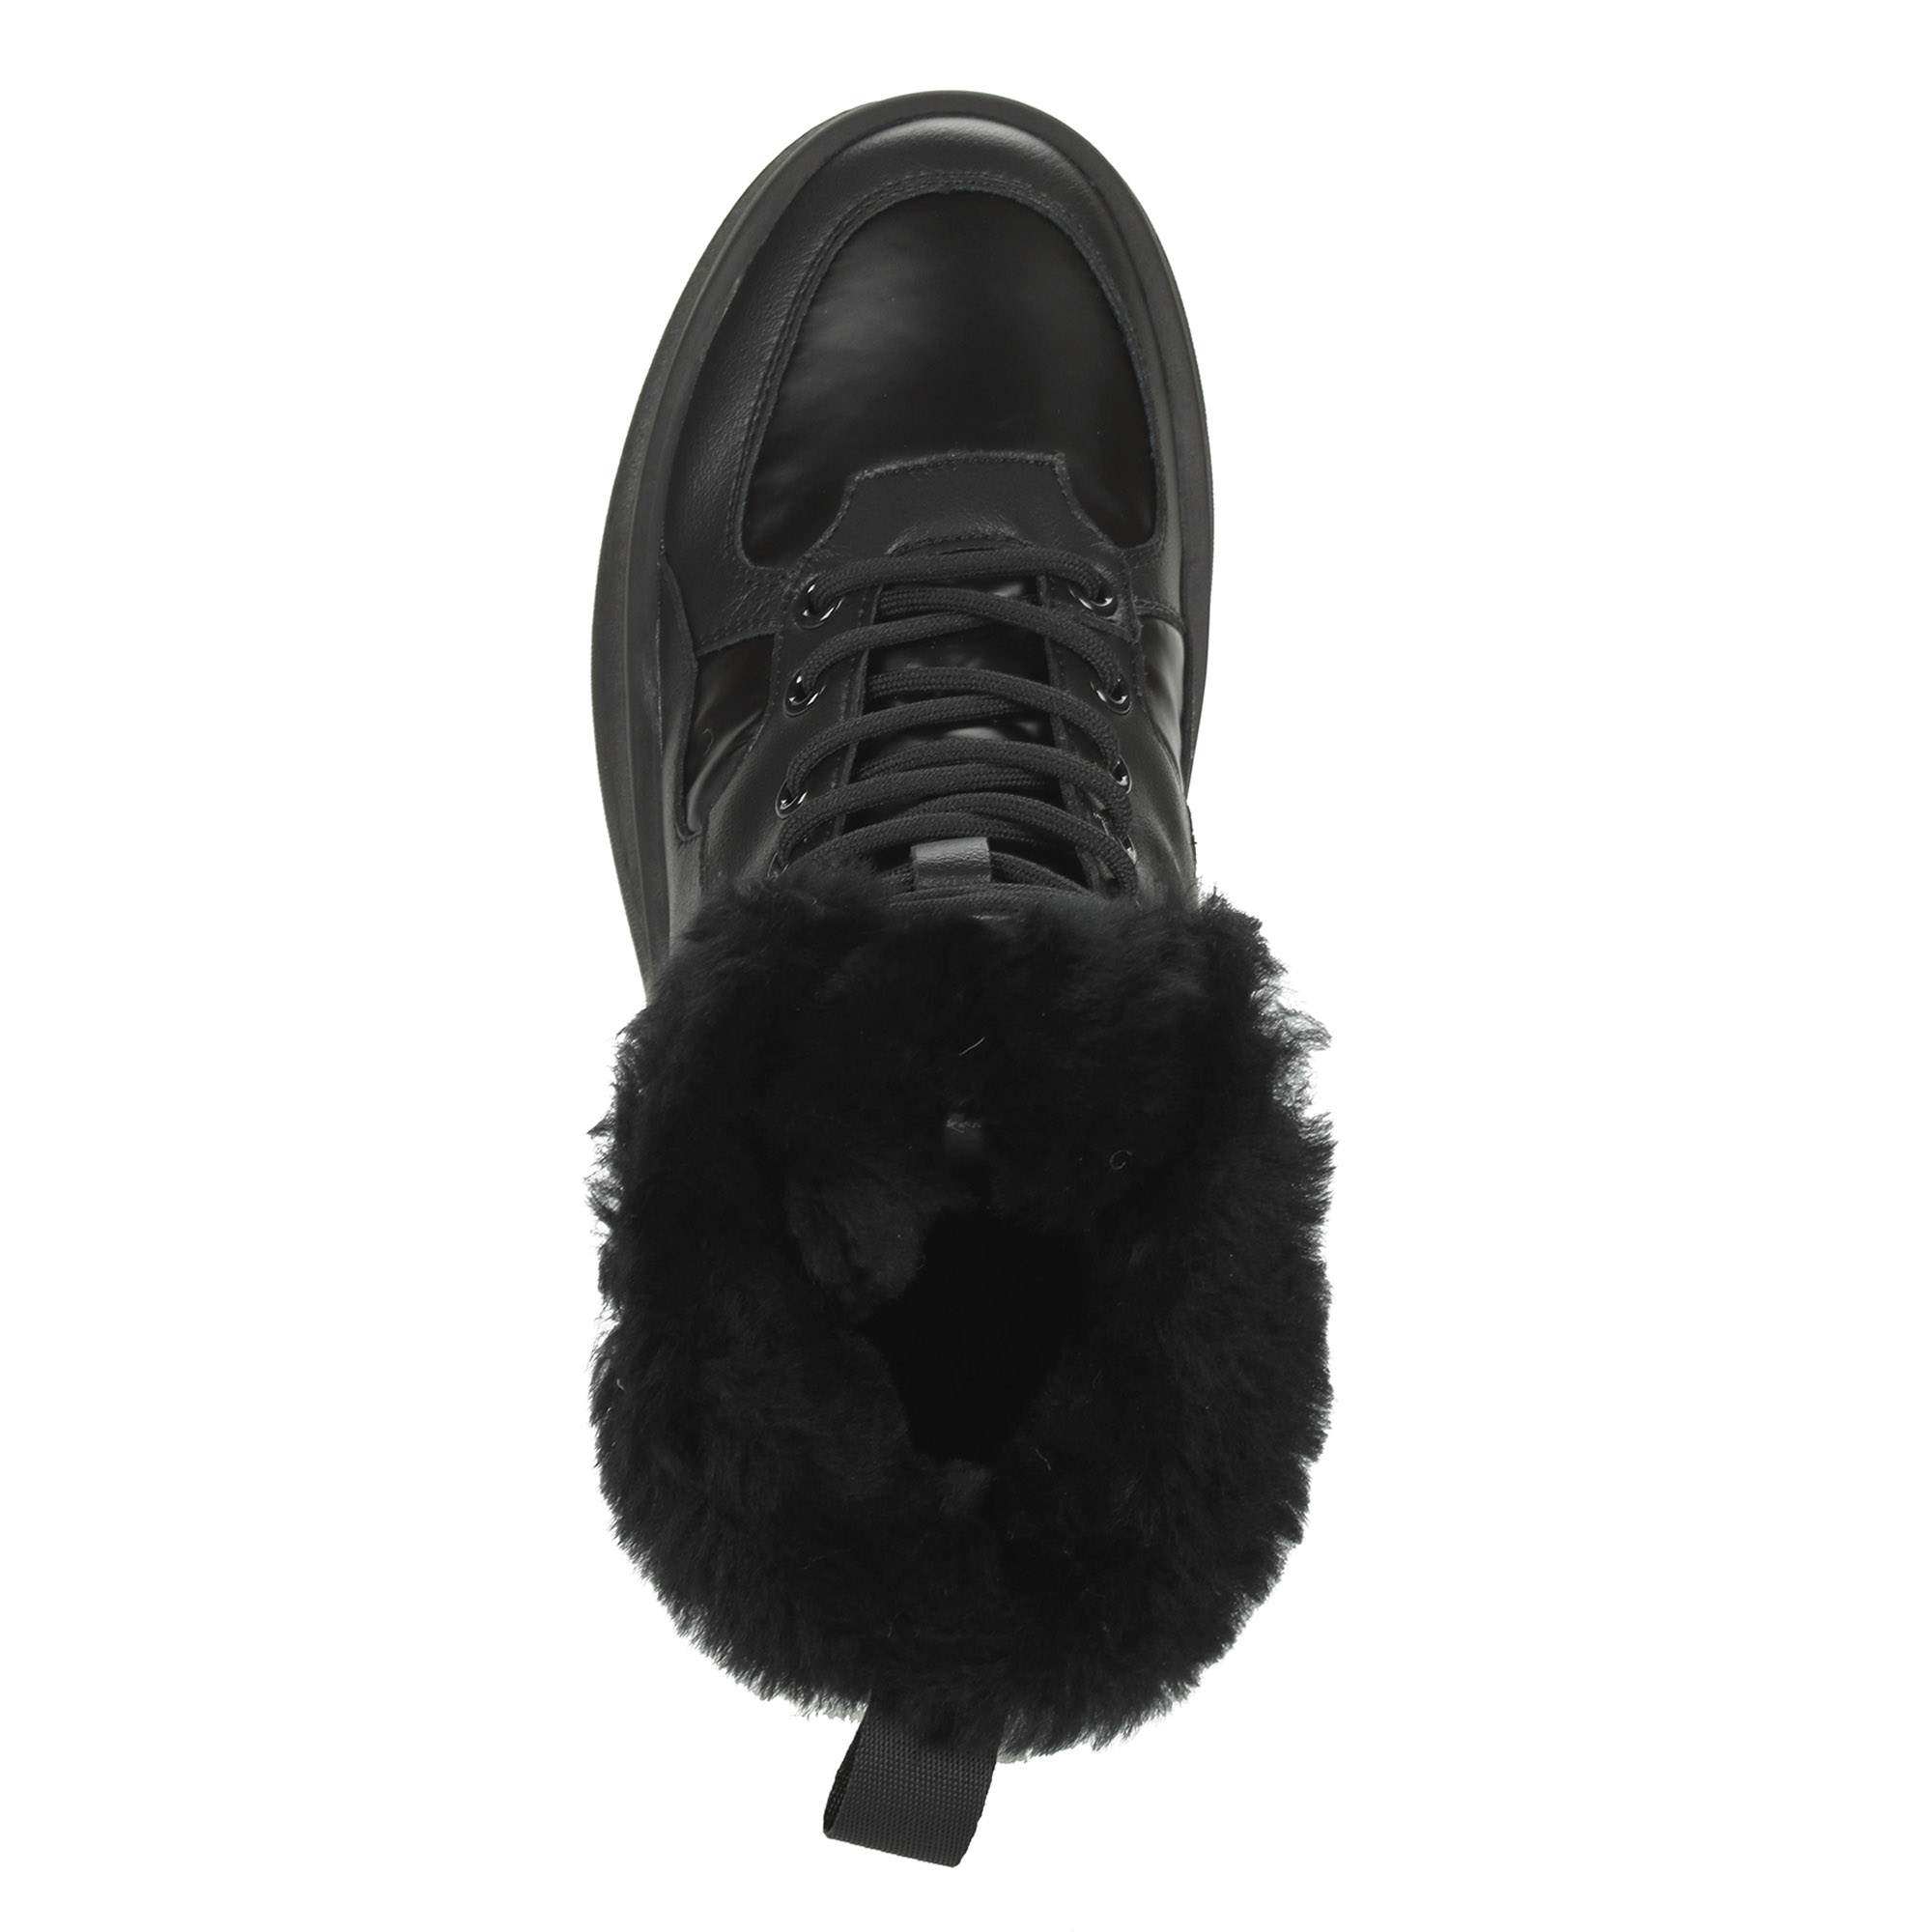 Черные высокие кроссовки из комбинированных материалов смеховой опушкой на подкладке из натуральной шерсти на утолщенной платформе Respect, размер 38, цвет черный - фото 7